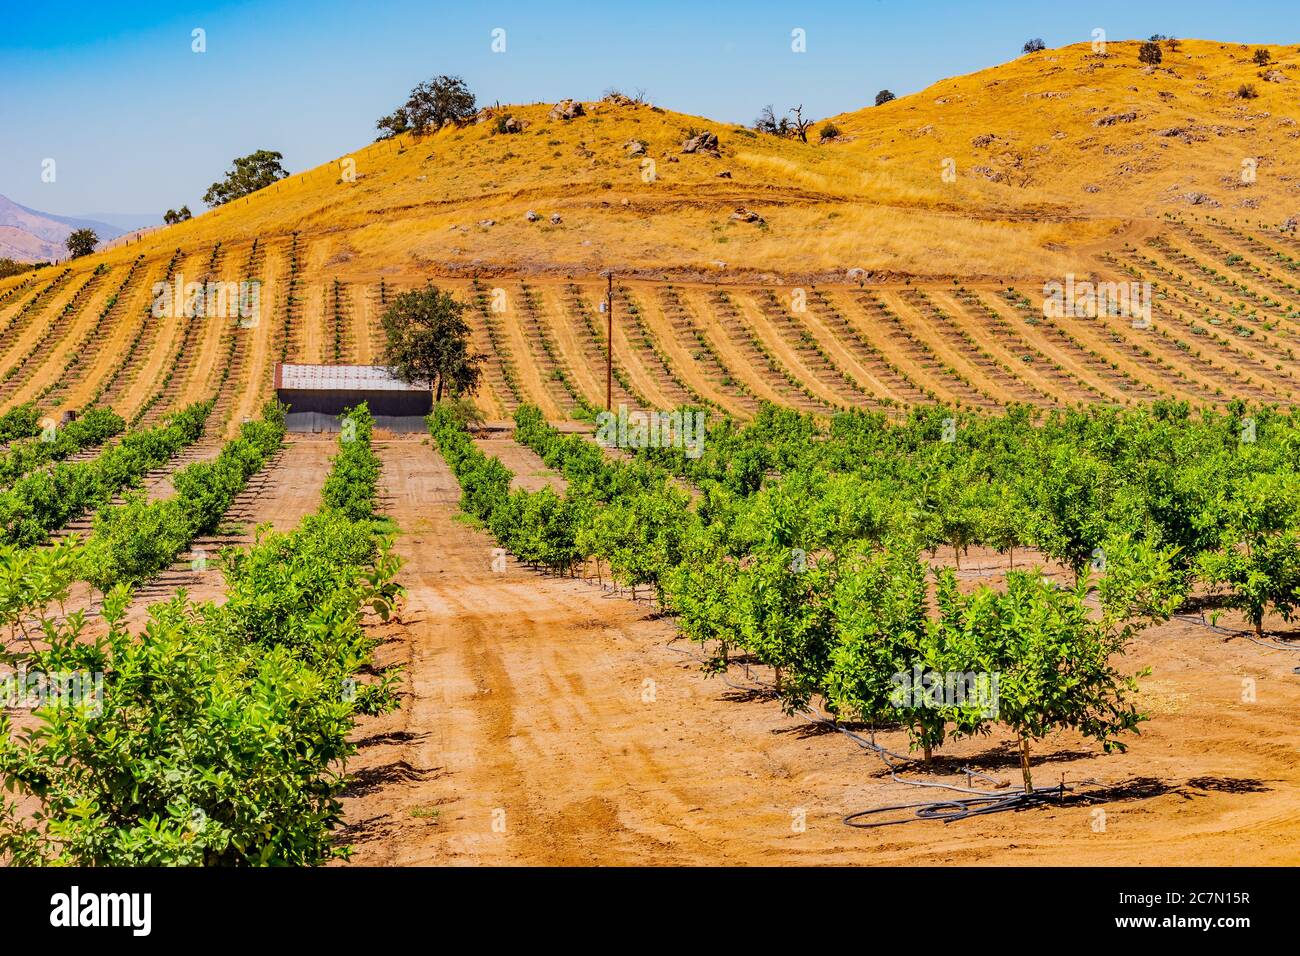 Junge und jüngere Orangenbäume wachsen in einem wachsenden Obstgarten im San Joaquin Valley. Dieses landwirtschaftliche Tal ist das Herz der kalifornischen Industrie. Stockfoto